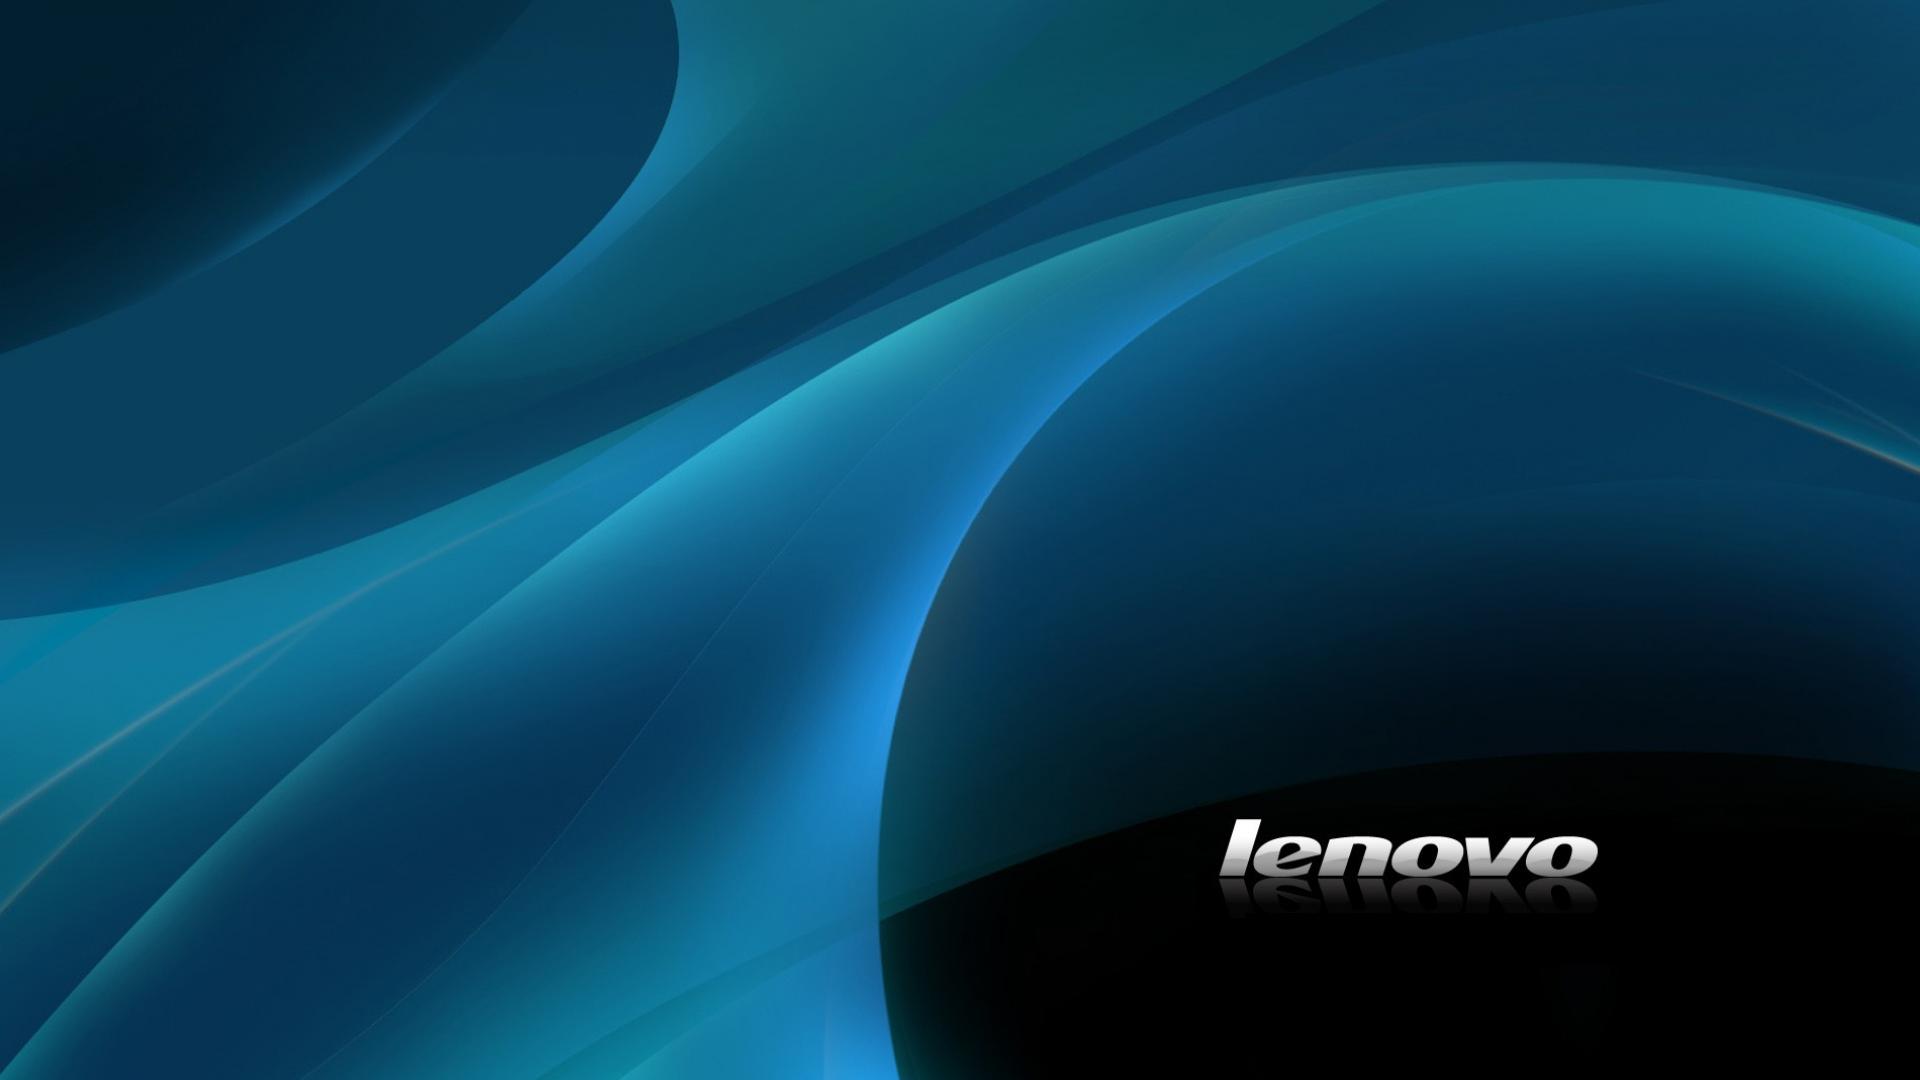 Ibm Thinkpad Lenovo Wallpaper